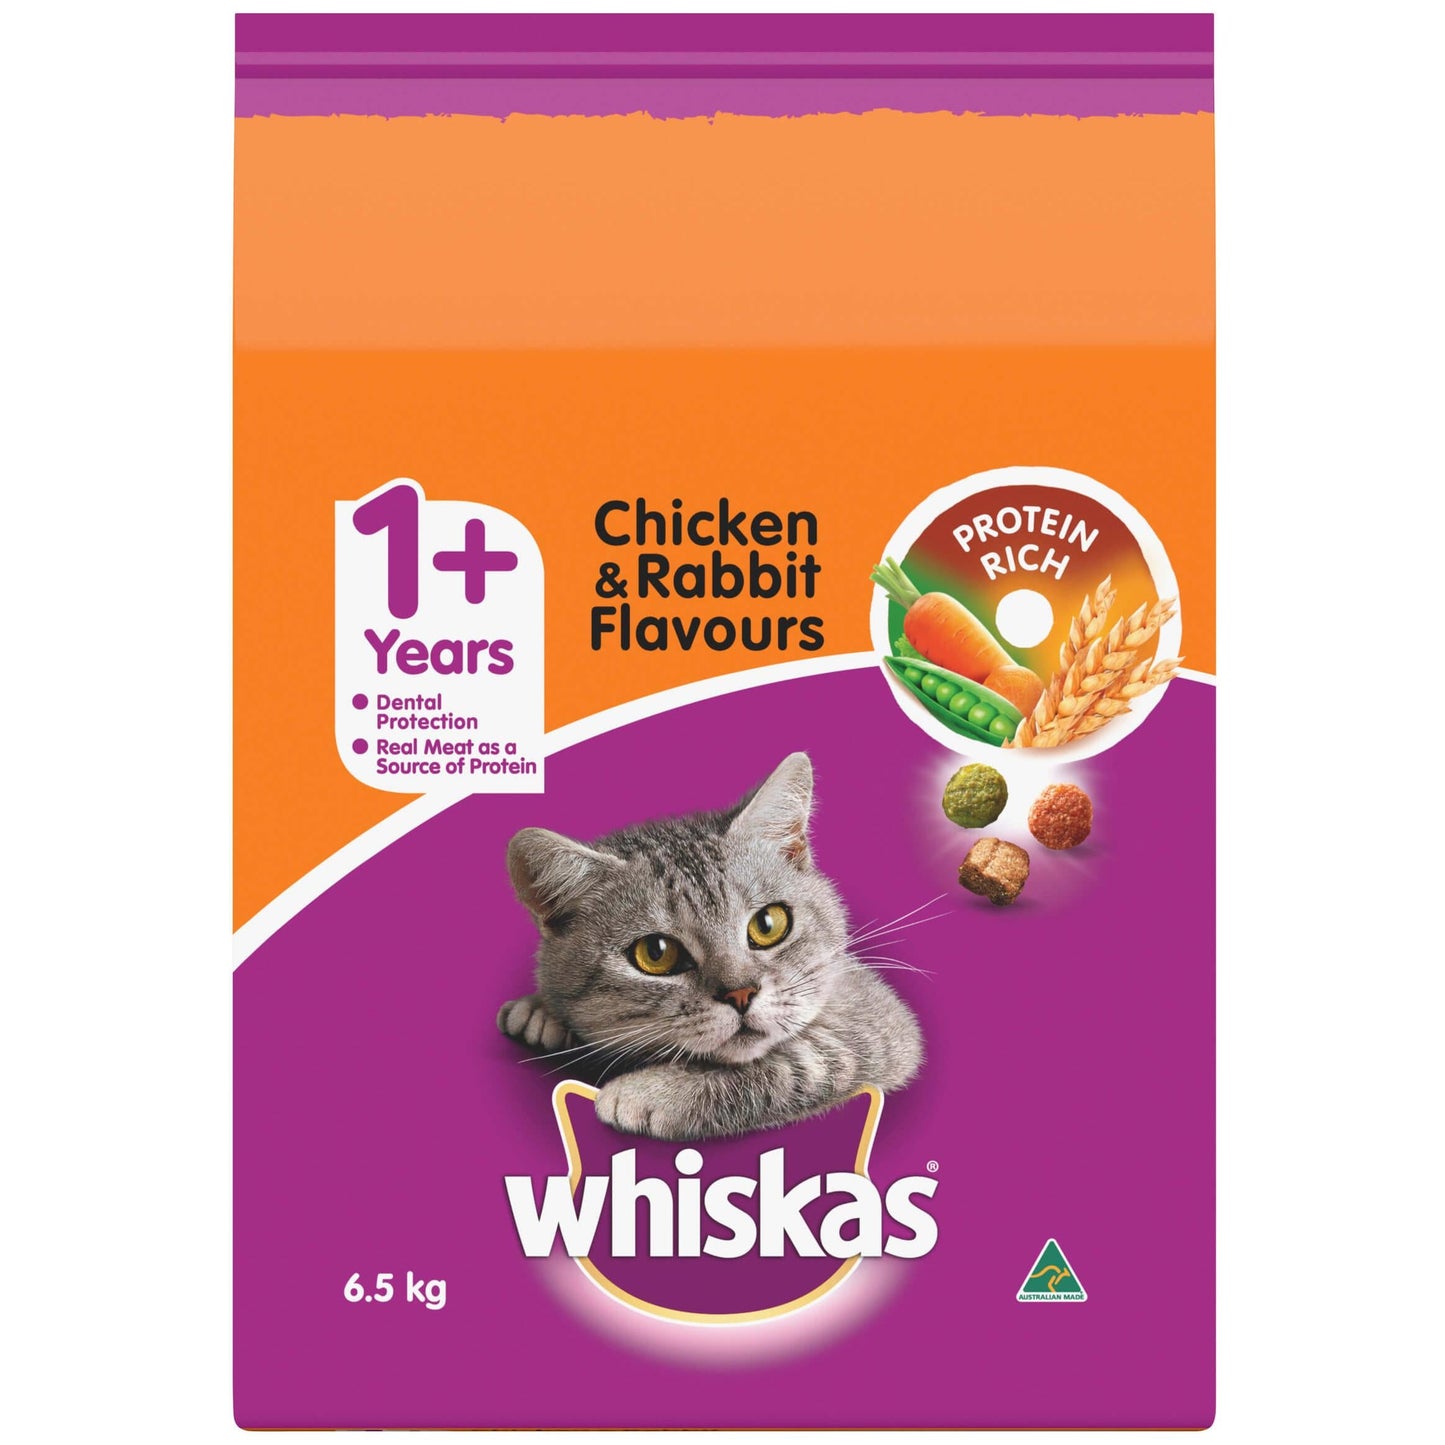 Whiskas Chicken and Rabbit - 6.5kg